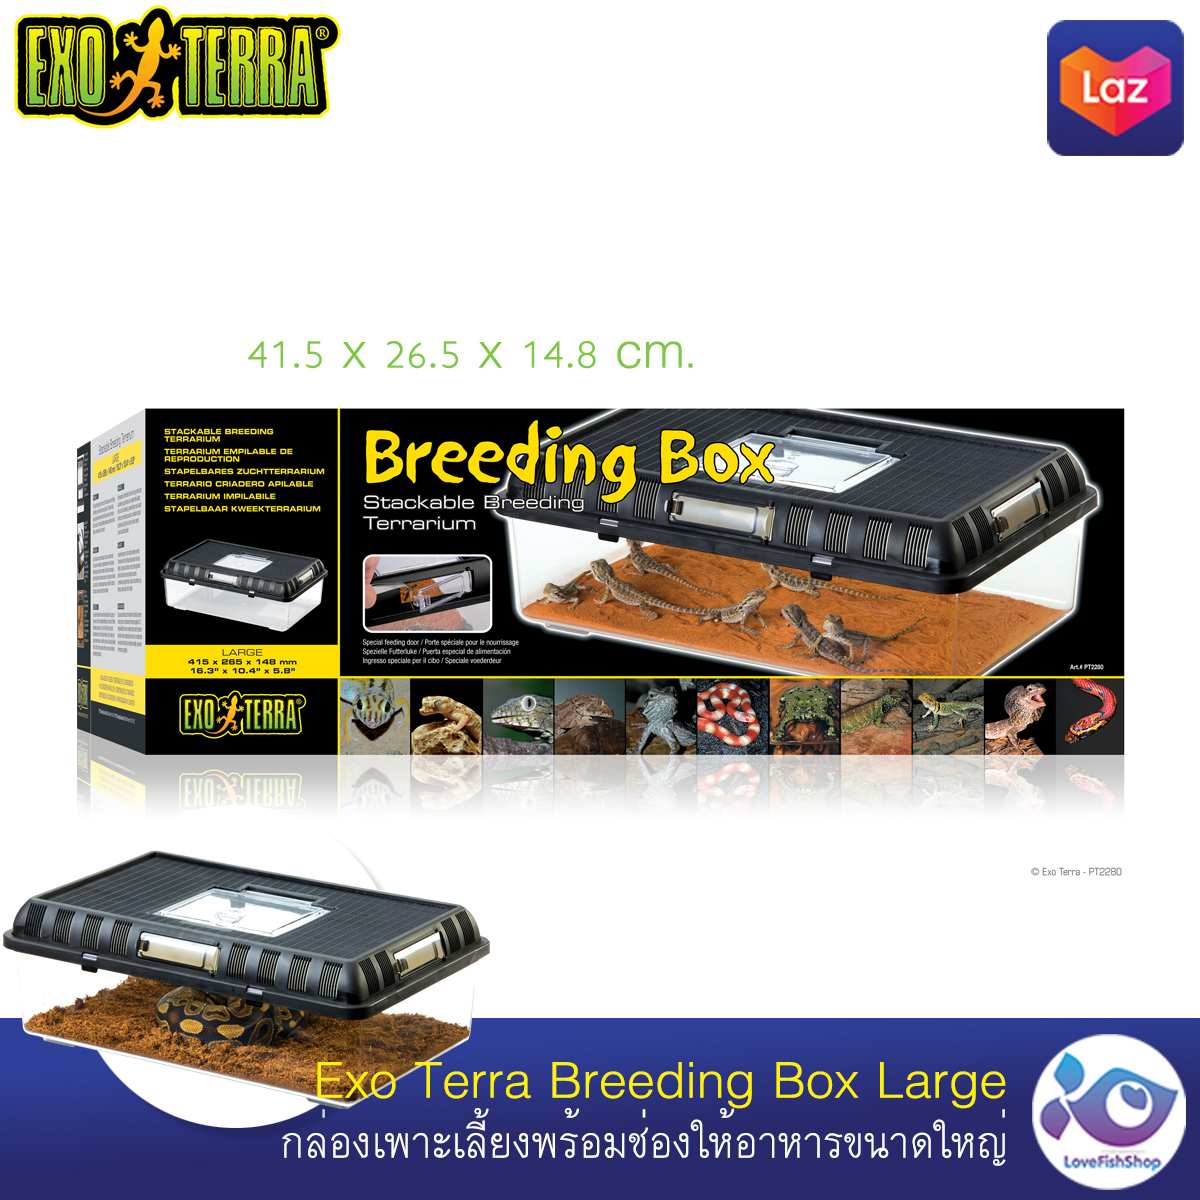 กล่องเพาะเลี้ยง Exo Terra Breeding Box Large ราคา 950 บาท